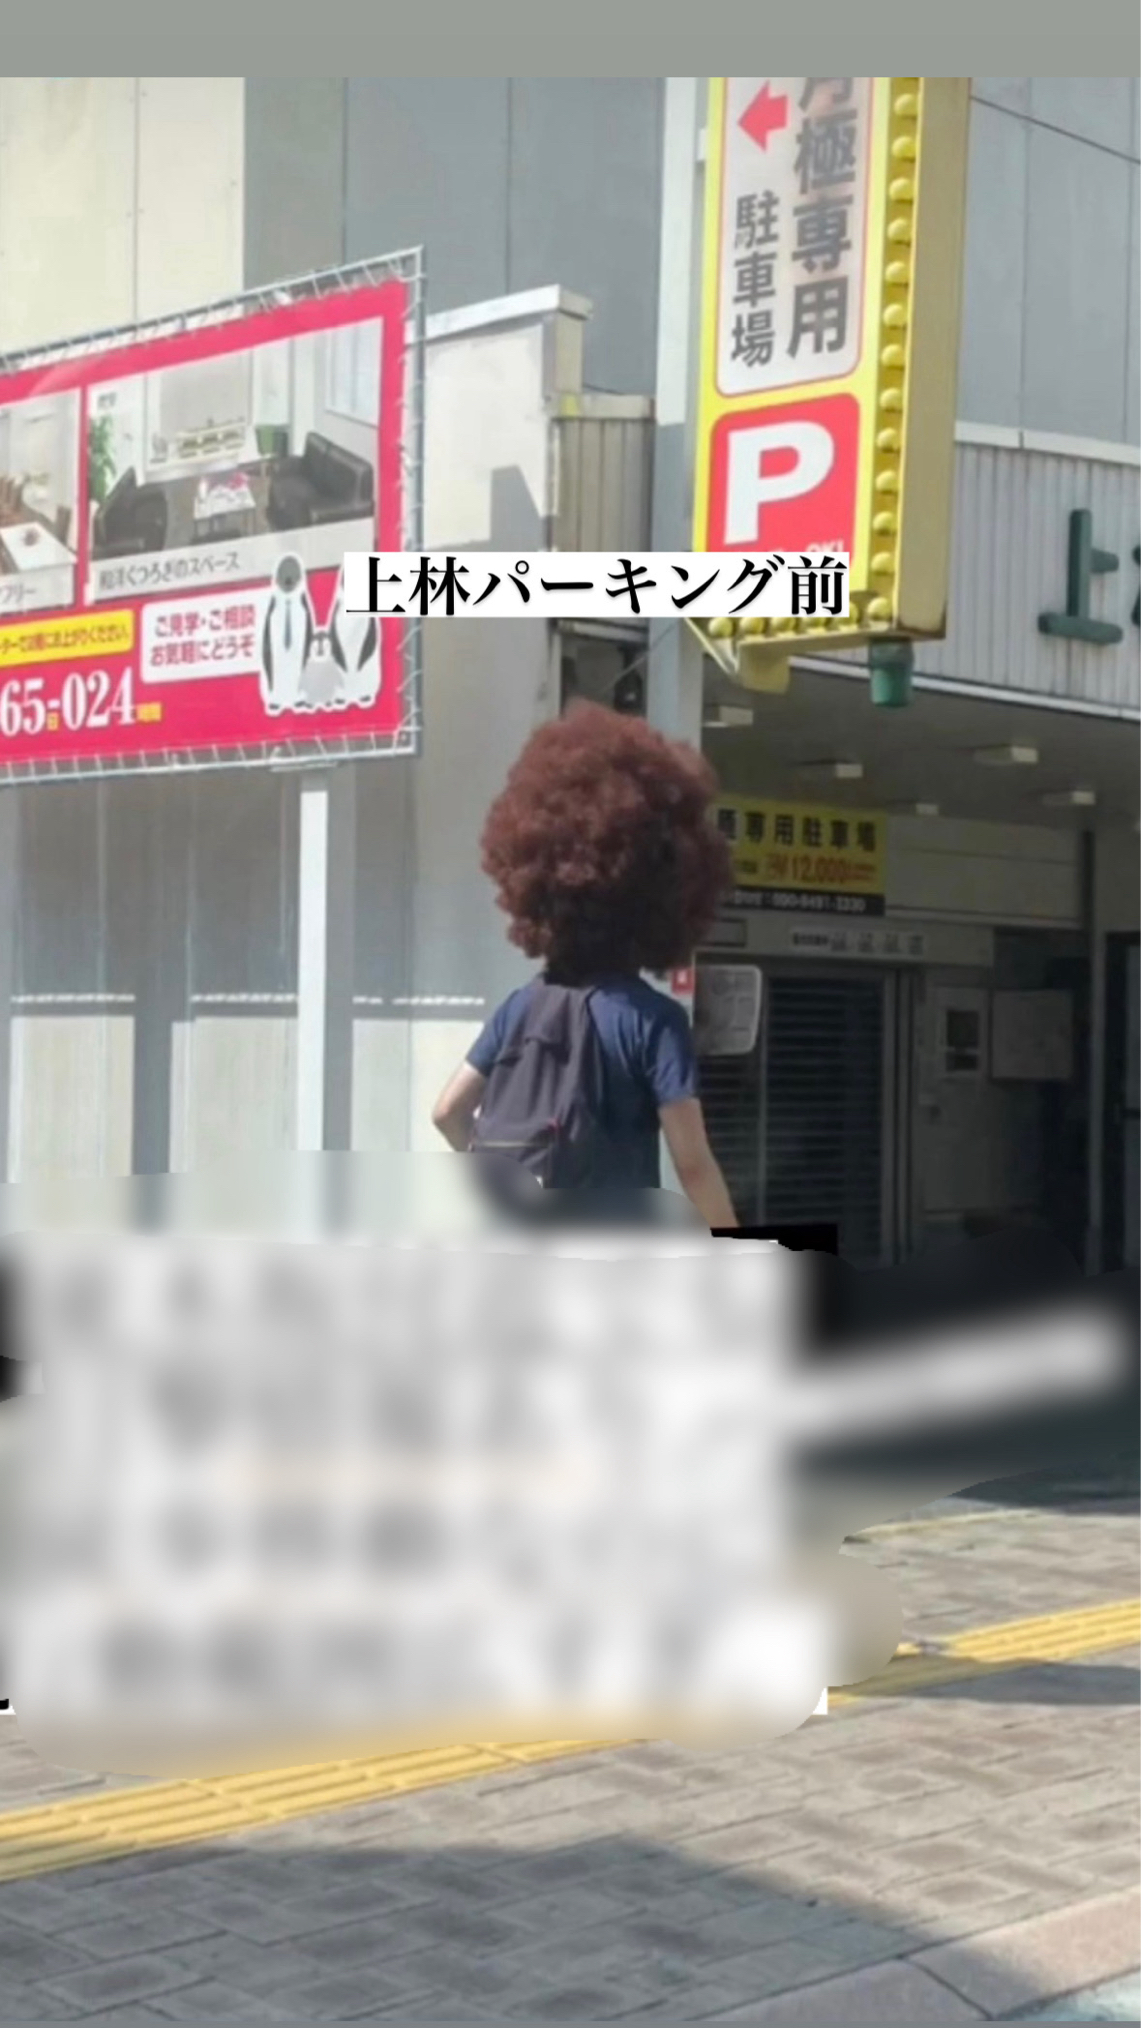 熊本市内を歩くアフロ男性